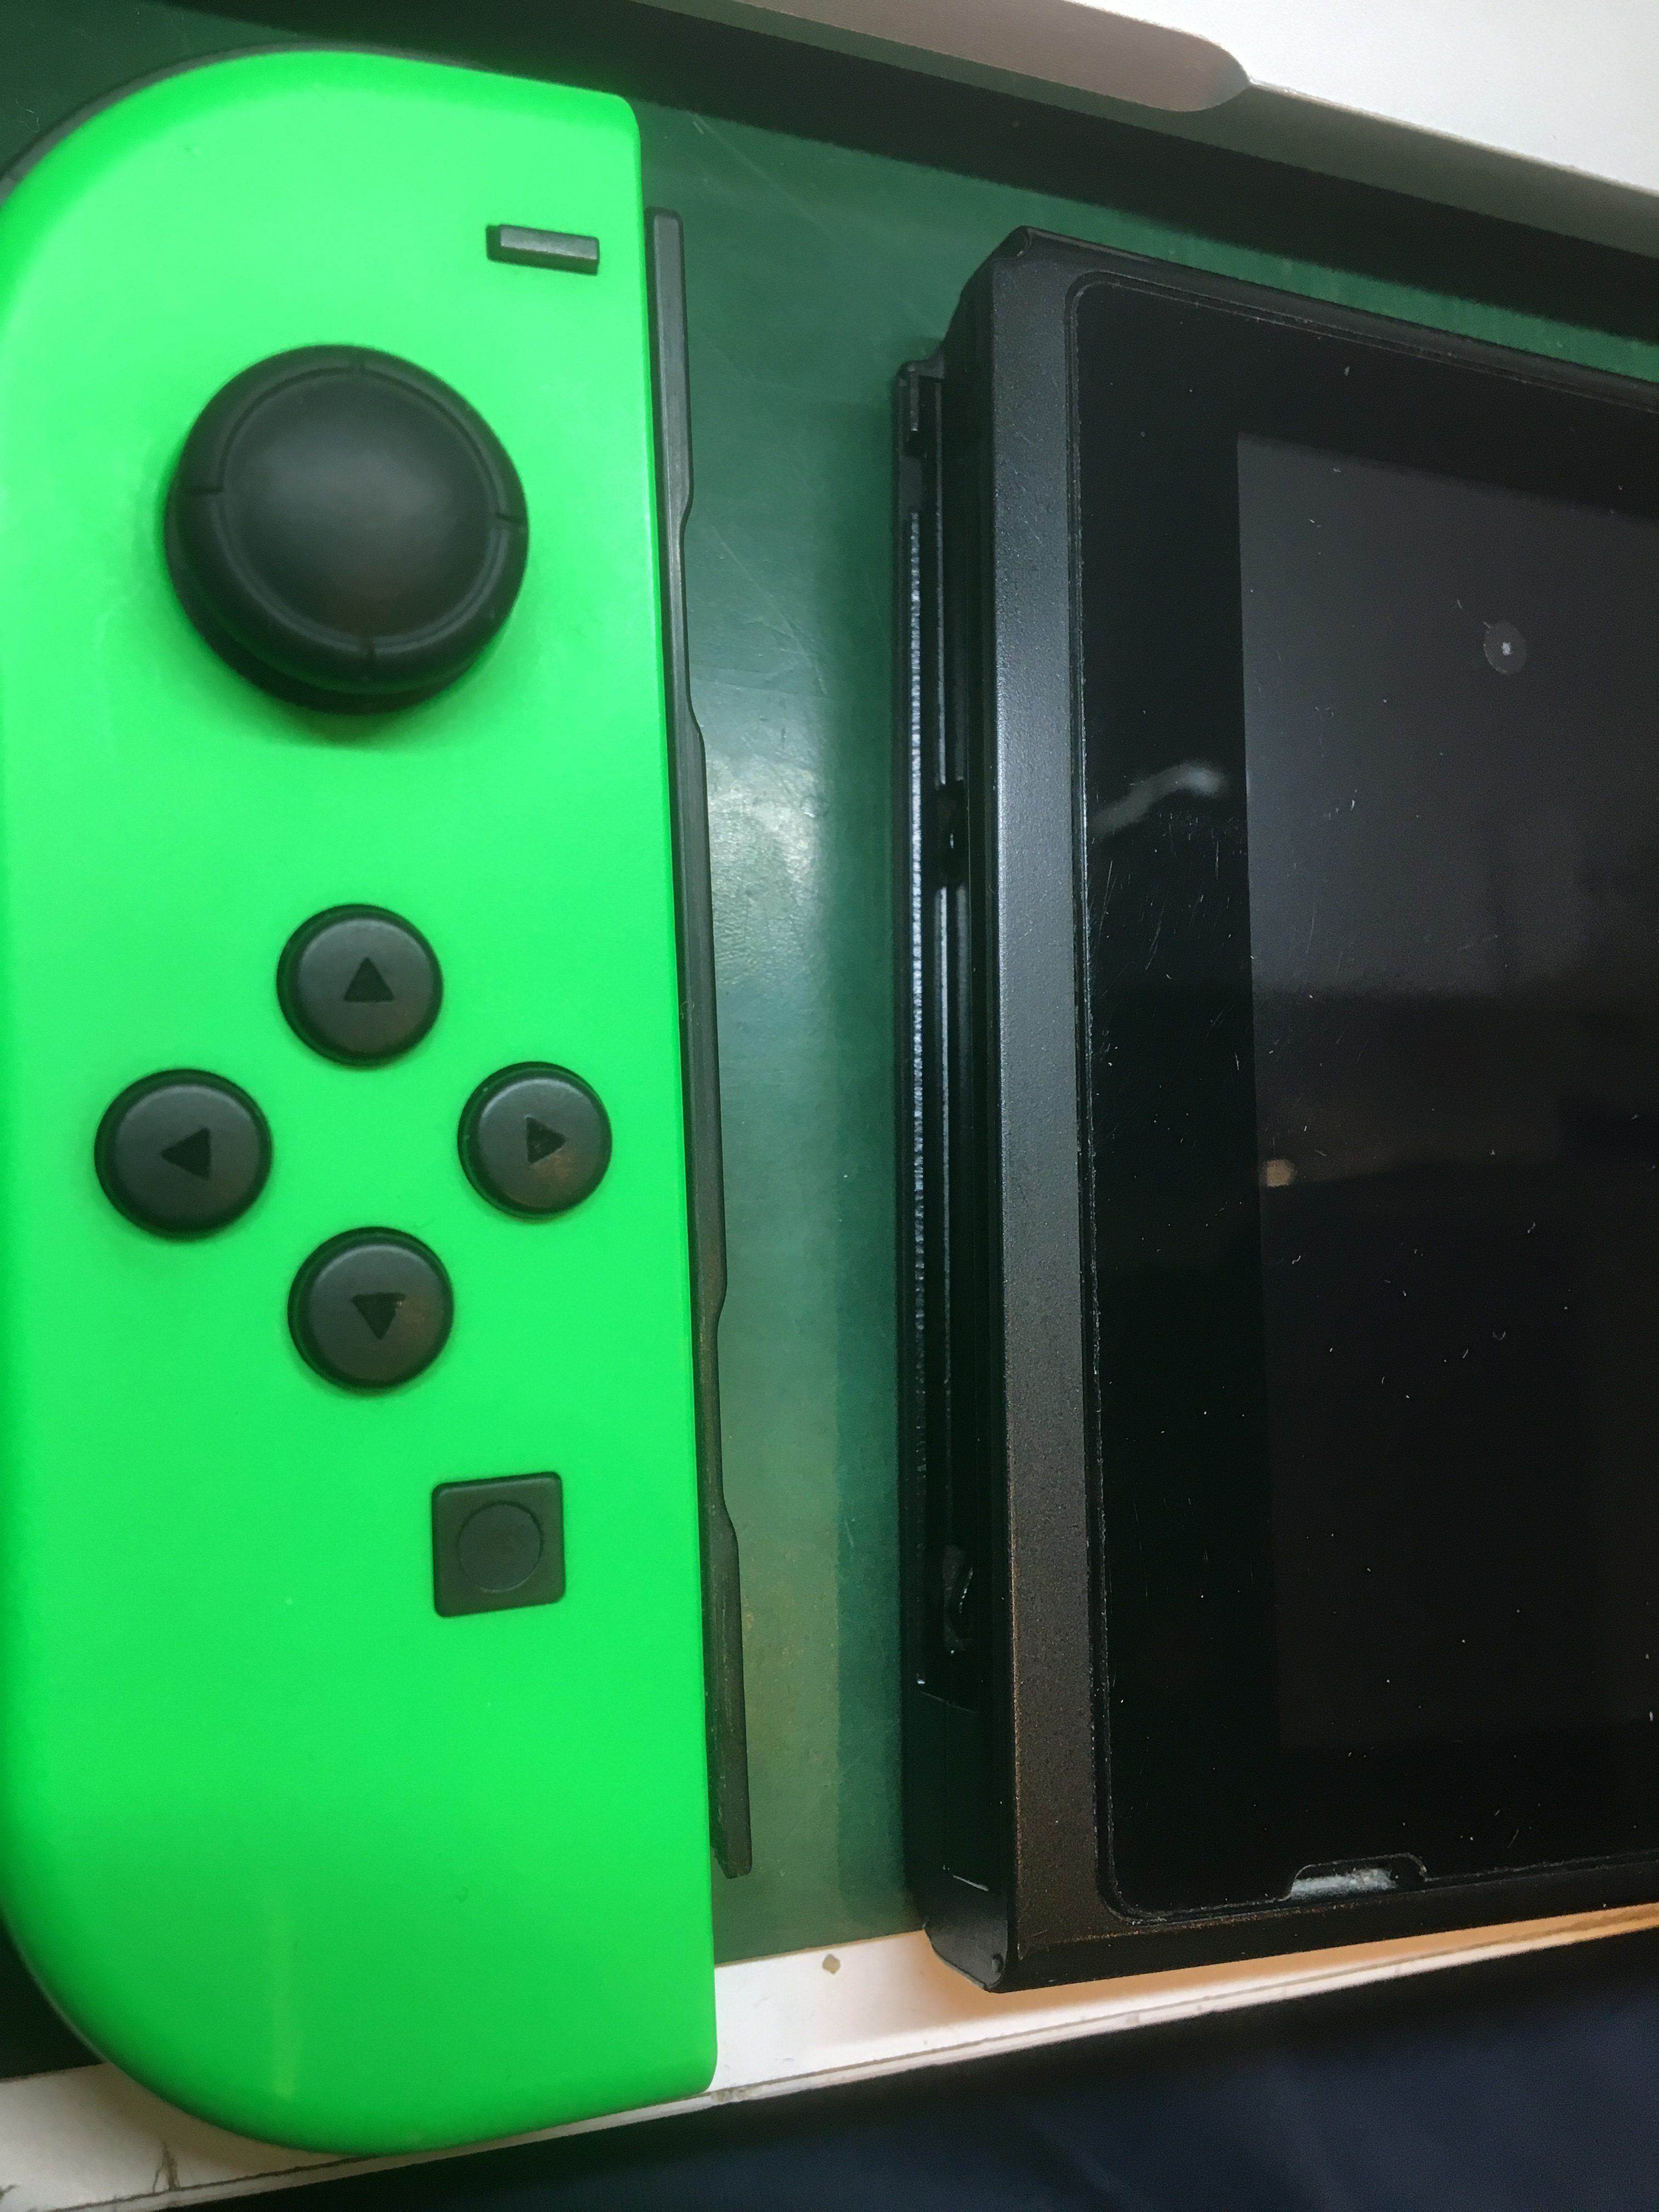 Joy Conが反応していない Joy Conの充電ができないと大変 Nintendo Switchレールスライダー交換修理 Nintendo3ds Switch Psp 修理のゲームホスピタル Nintendo3ds ニンテンドーds Psp Switch 修理